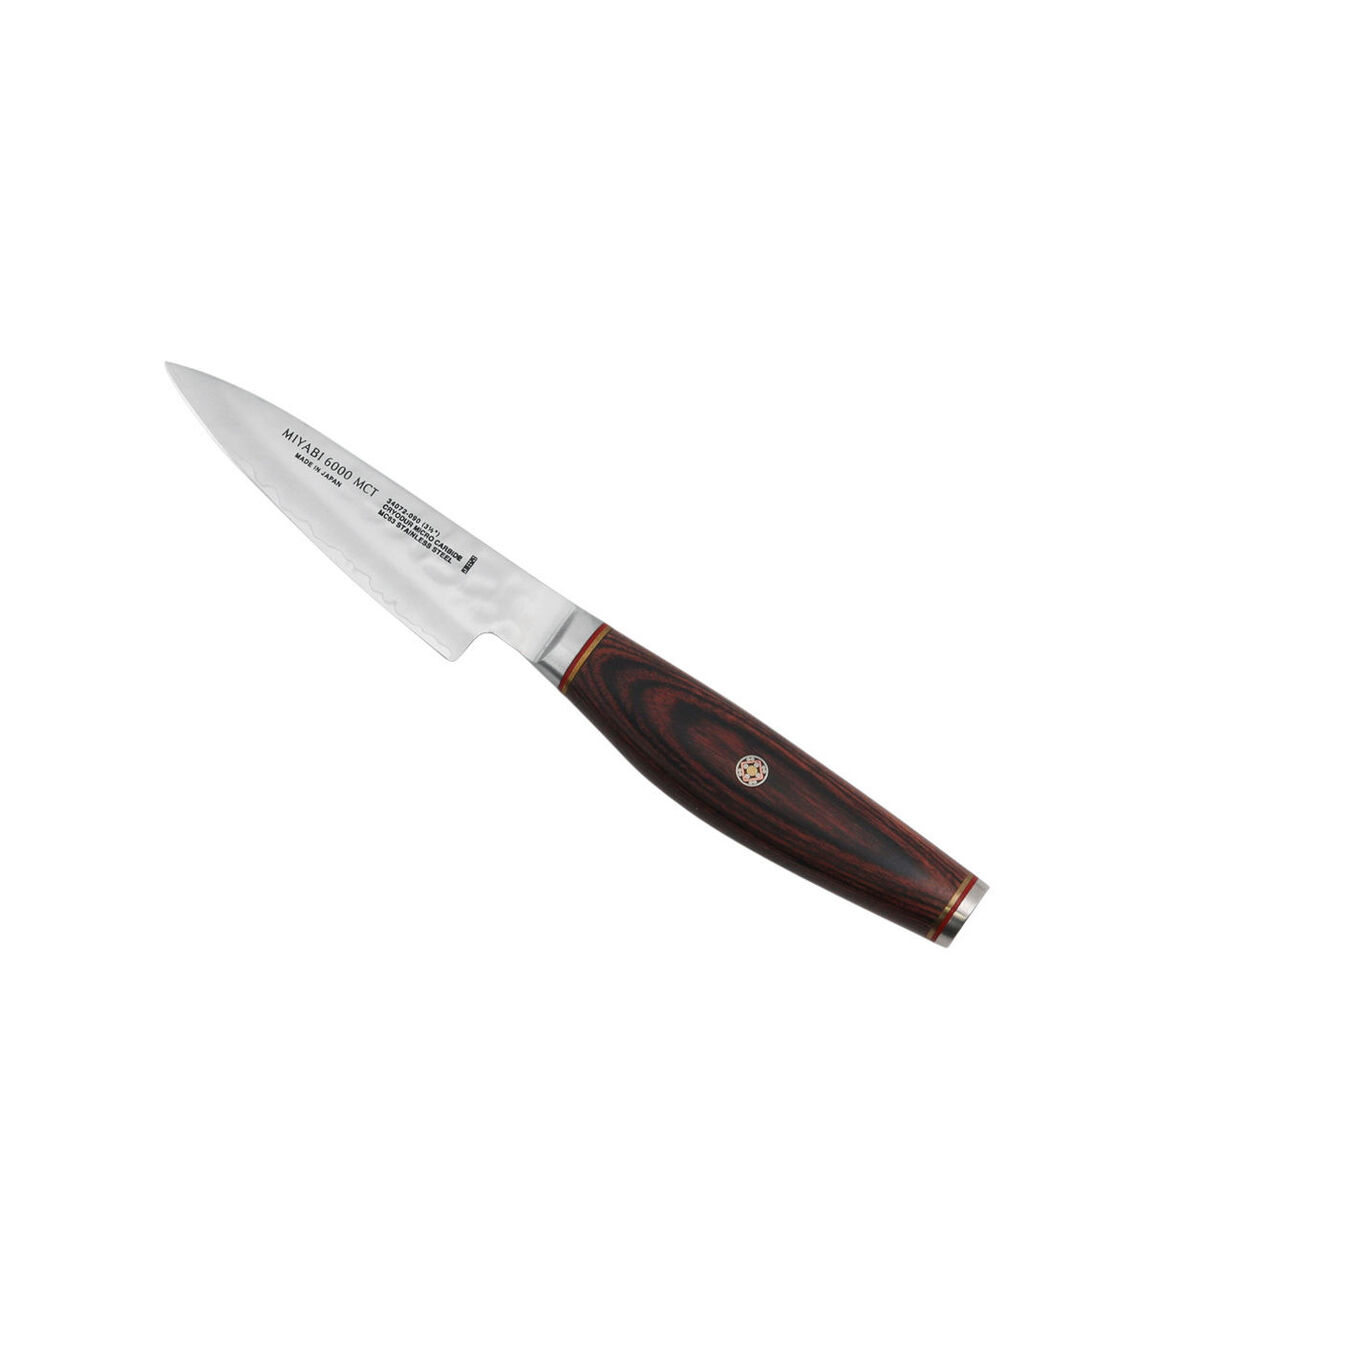 3.5-inch Pakka Wood Paring Knife,,large 3